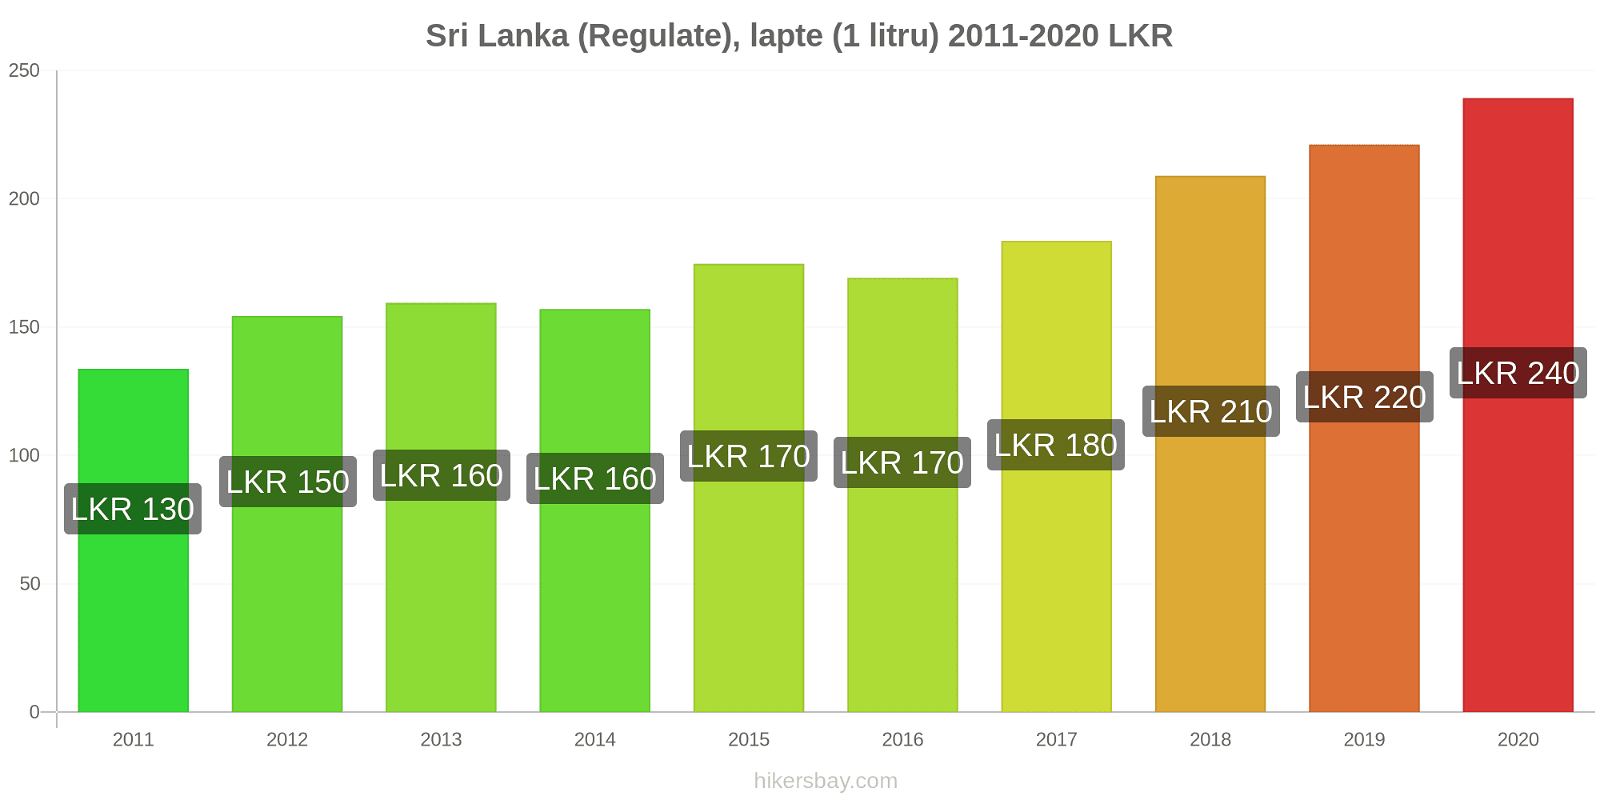 Sri Lanka modificări de preț (Regulate), lapte (1 litru) hikersbay.com